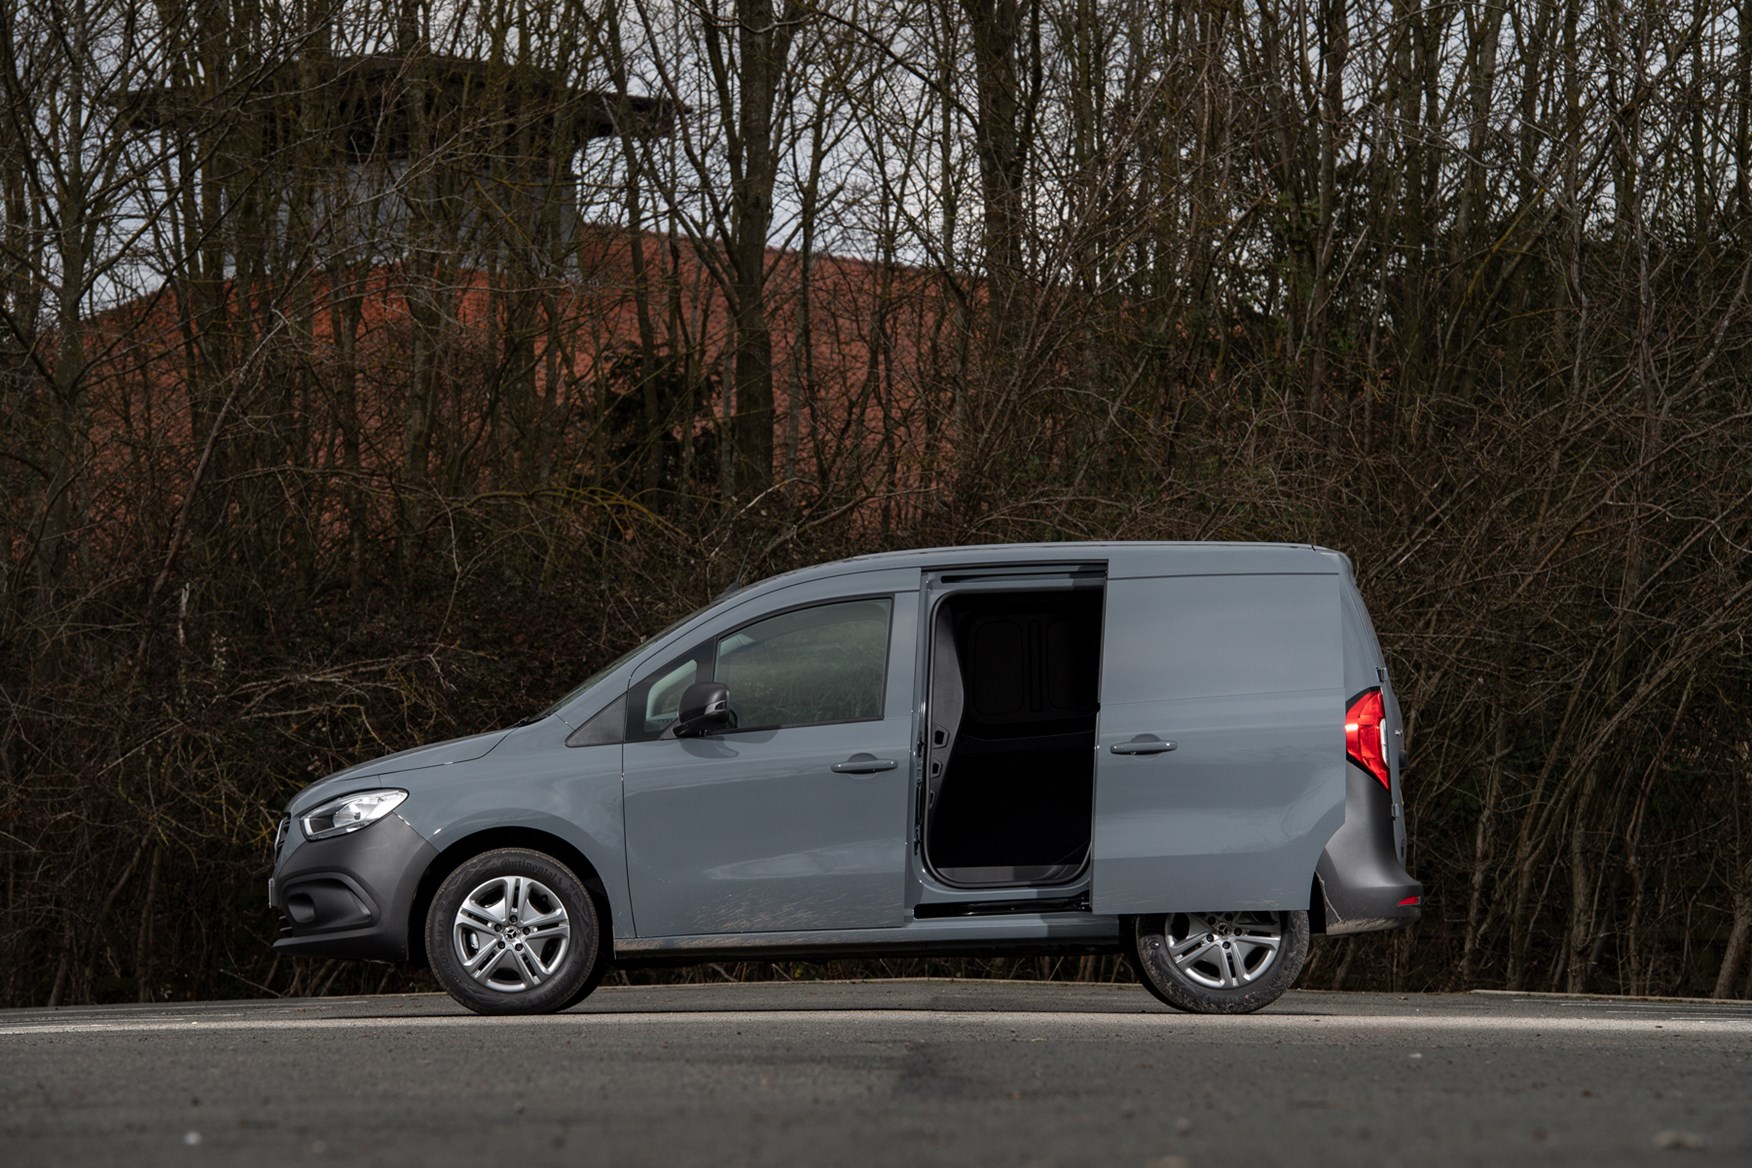 Mercedes Citan van review - slick city type - Business Vans